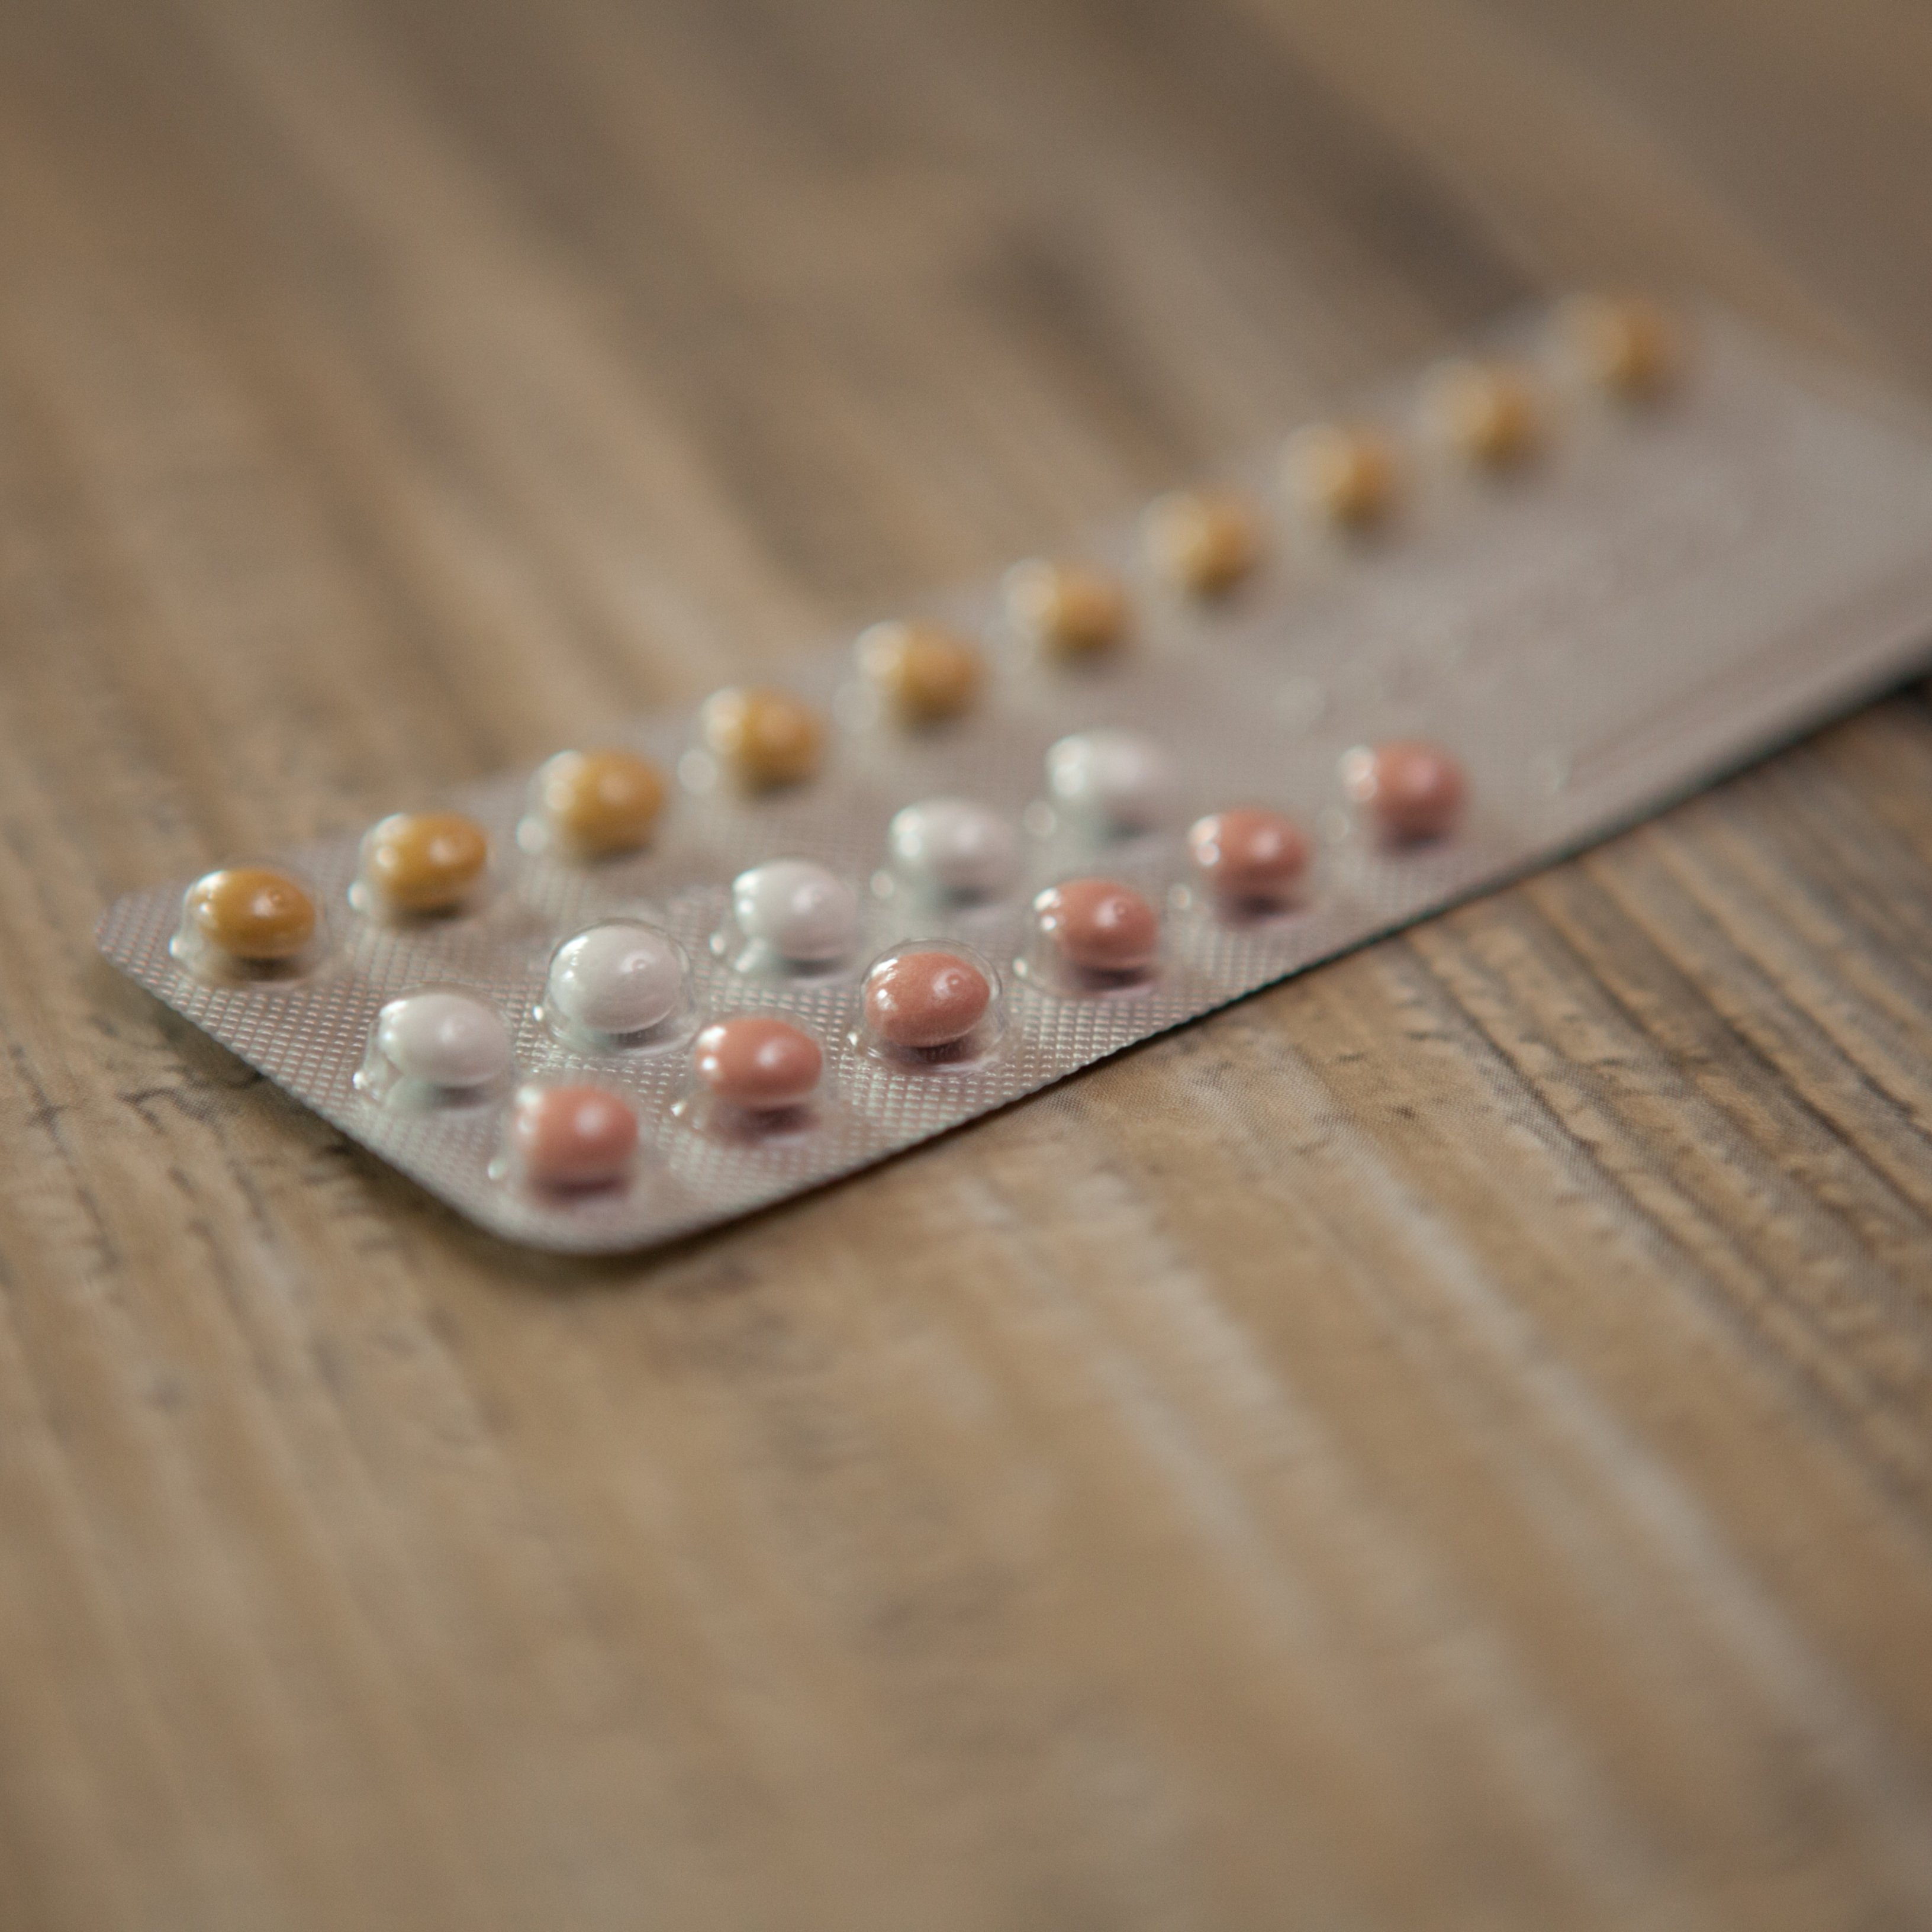 Pronto llegará la píldora anticonceptiva de un día al mes